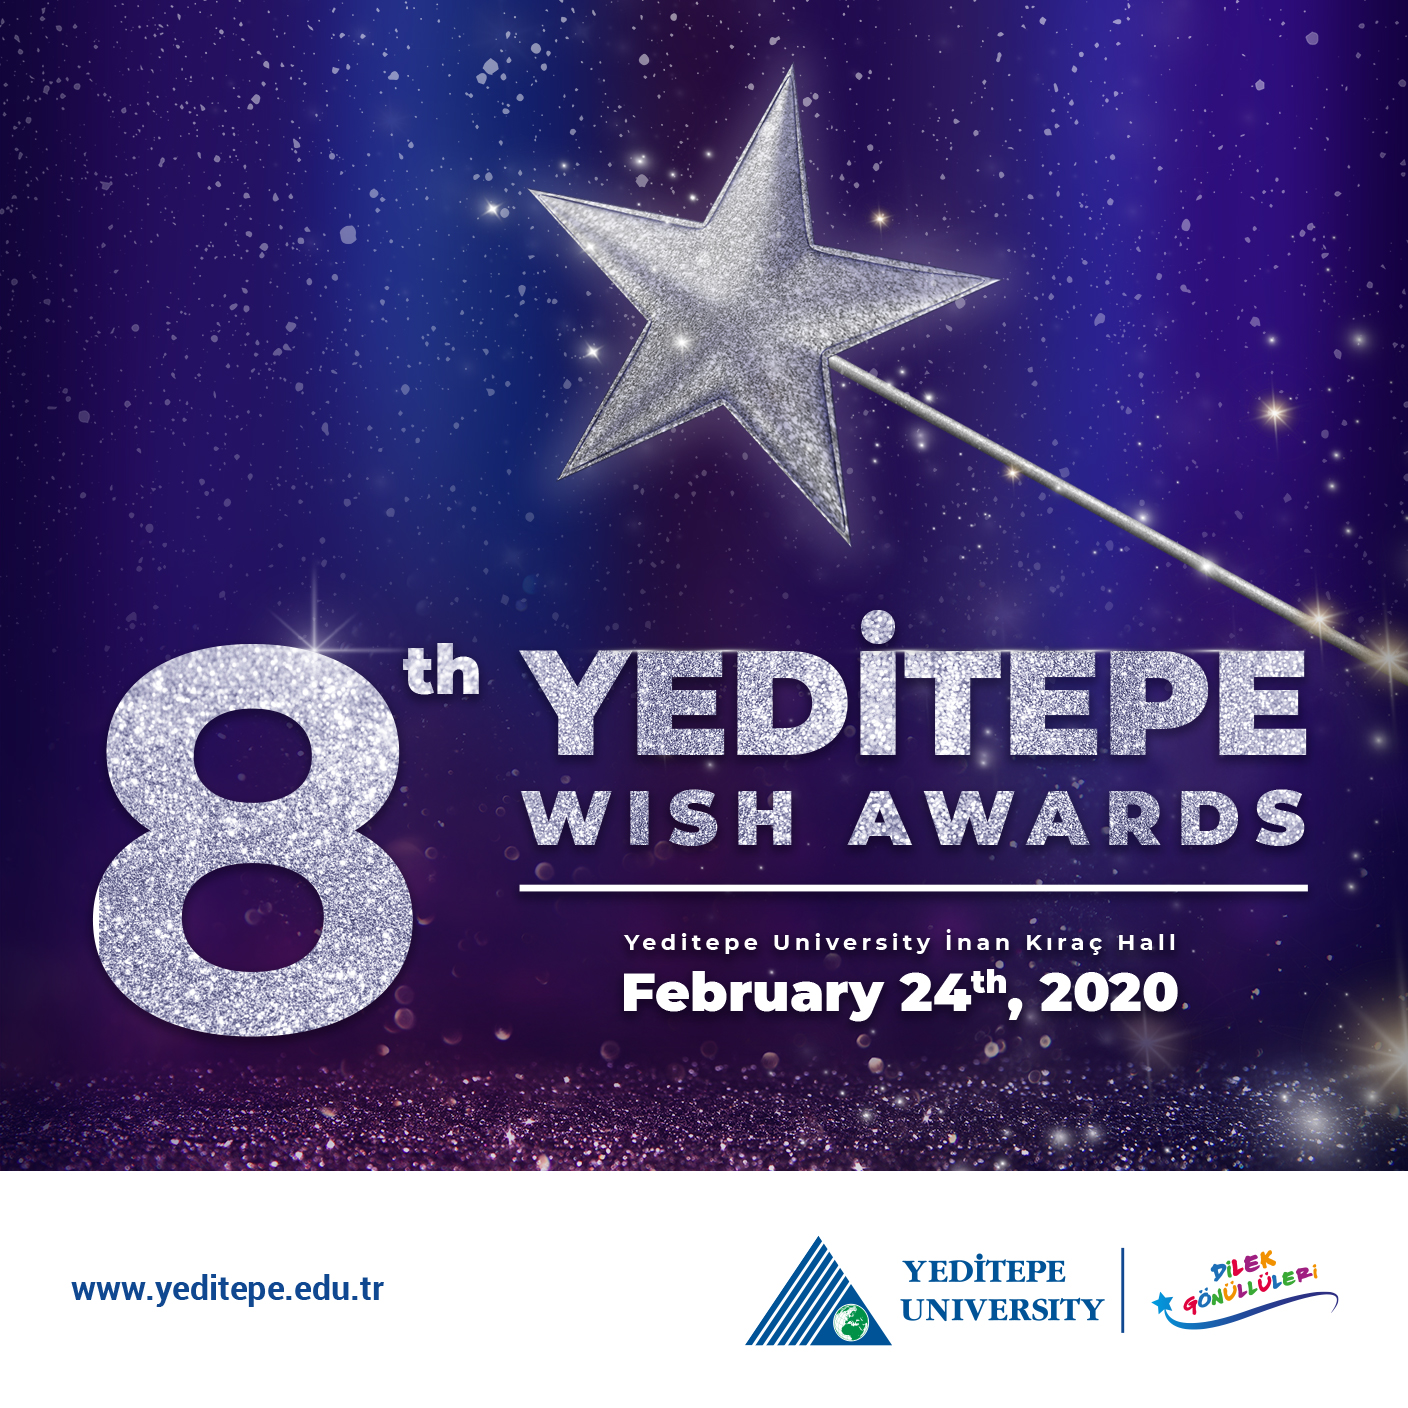 8th Yeditepe Wish Awards